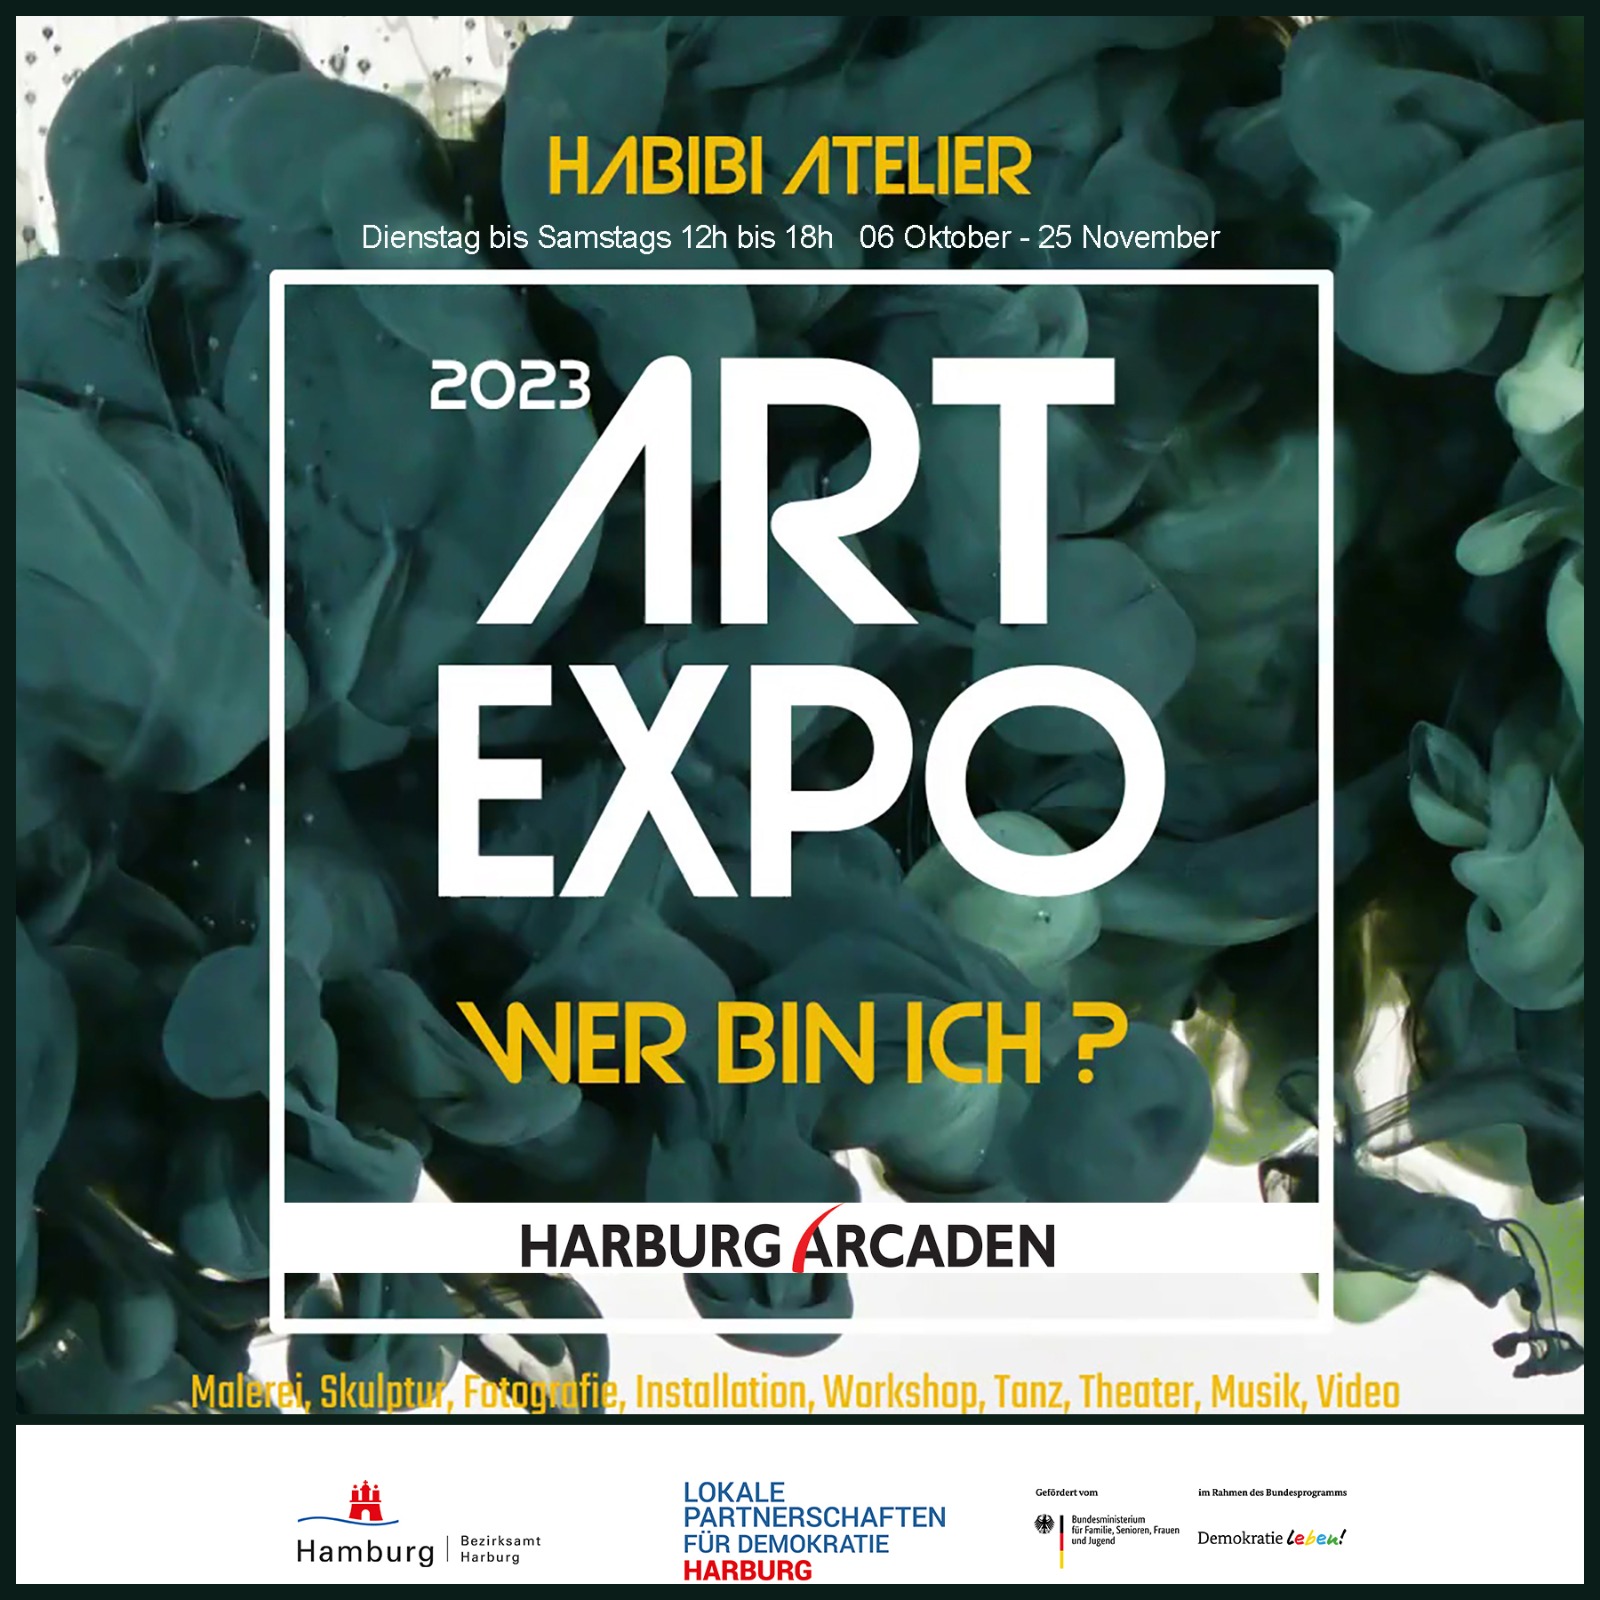 HABIBI ATELIER ART EXPO 2023